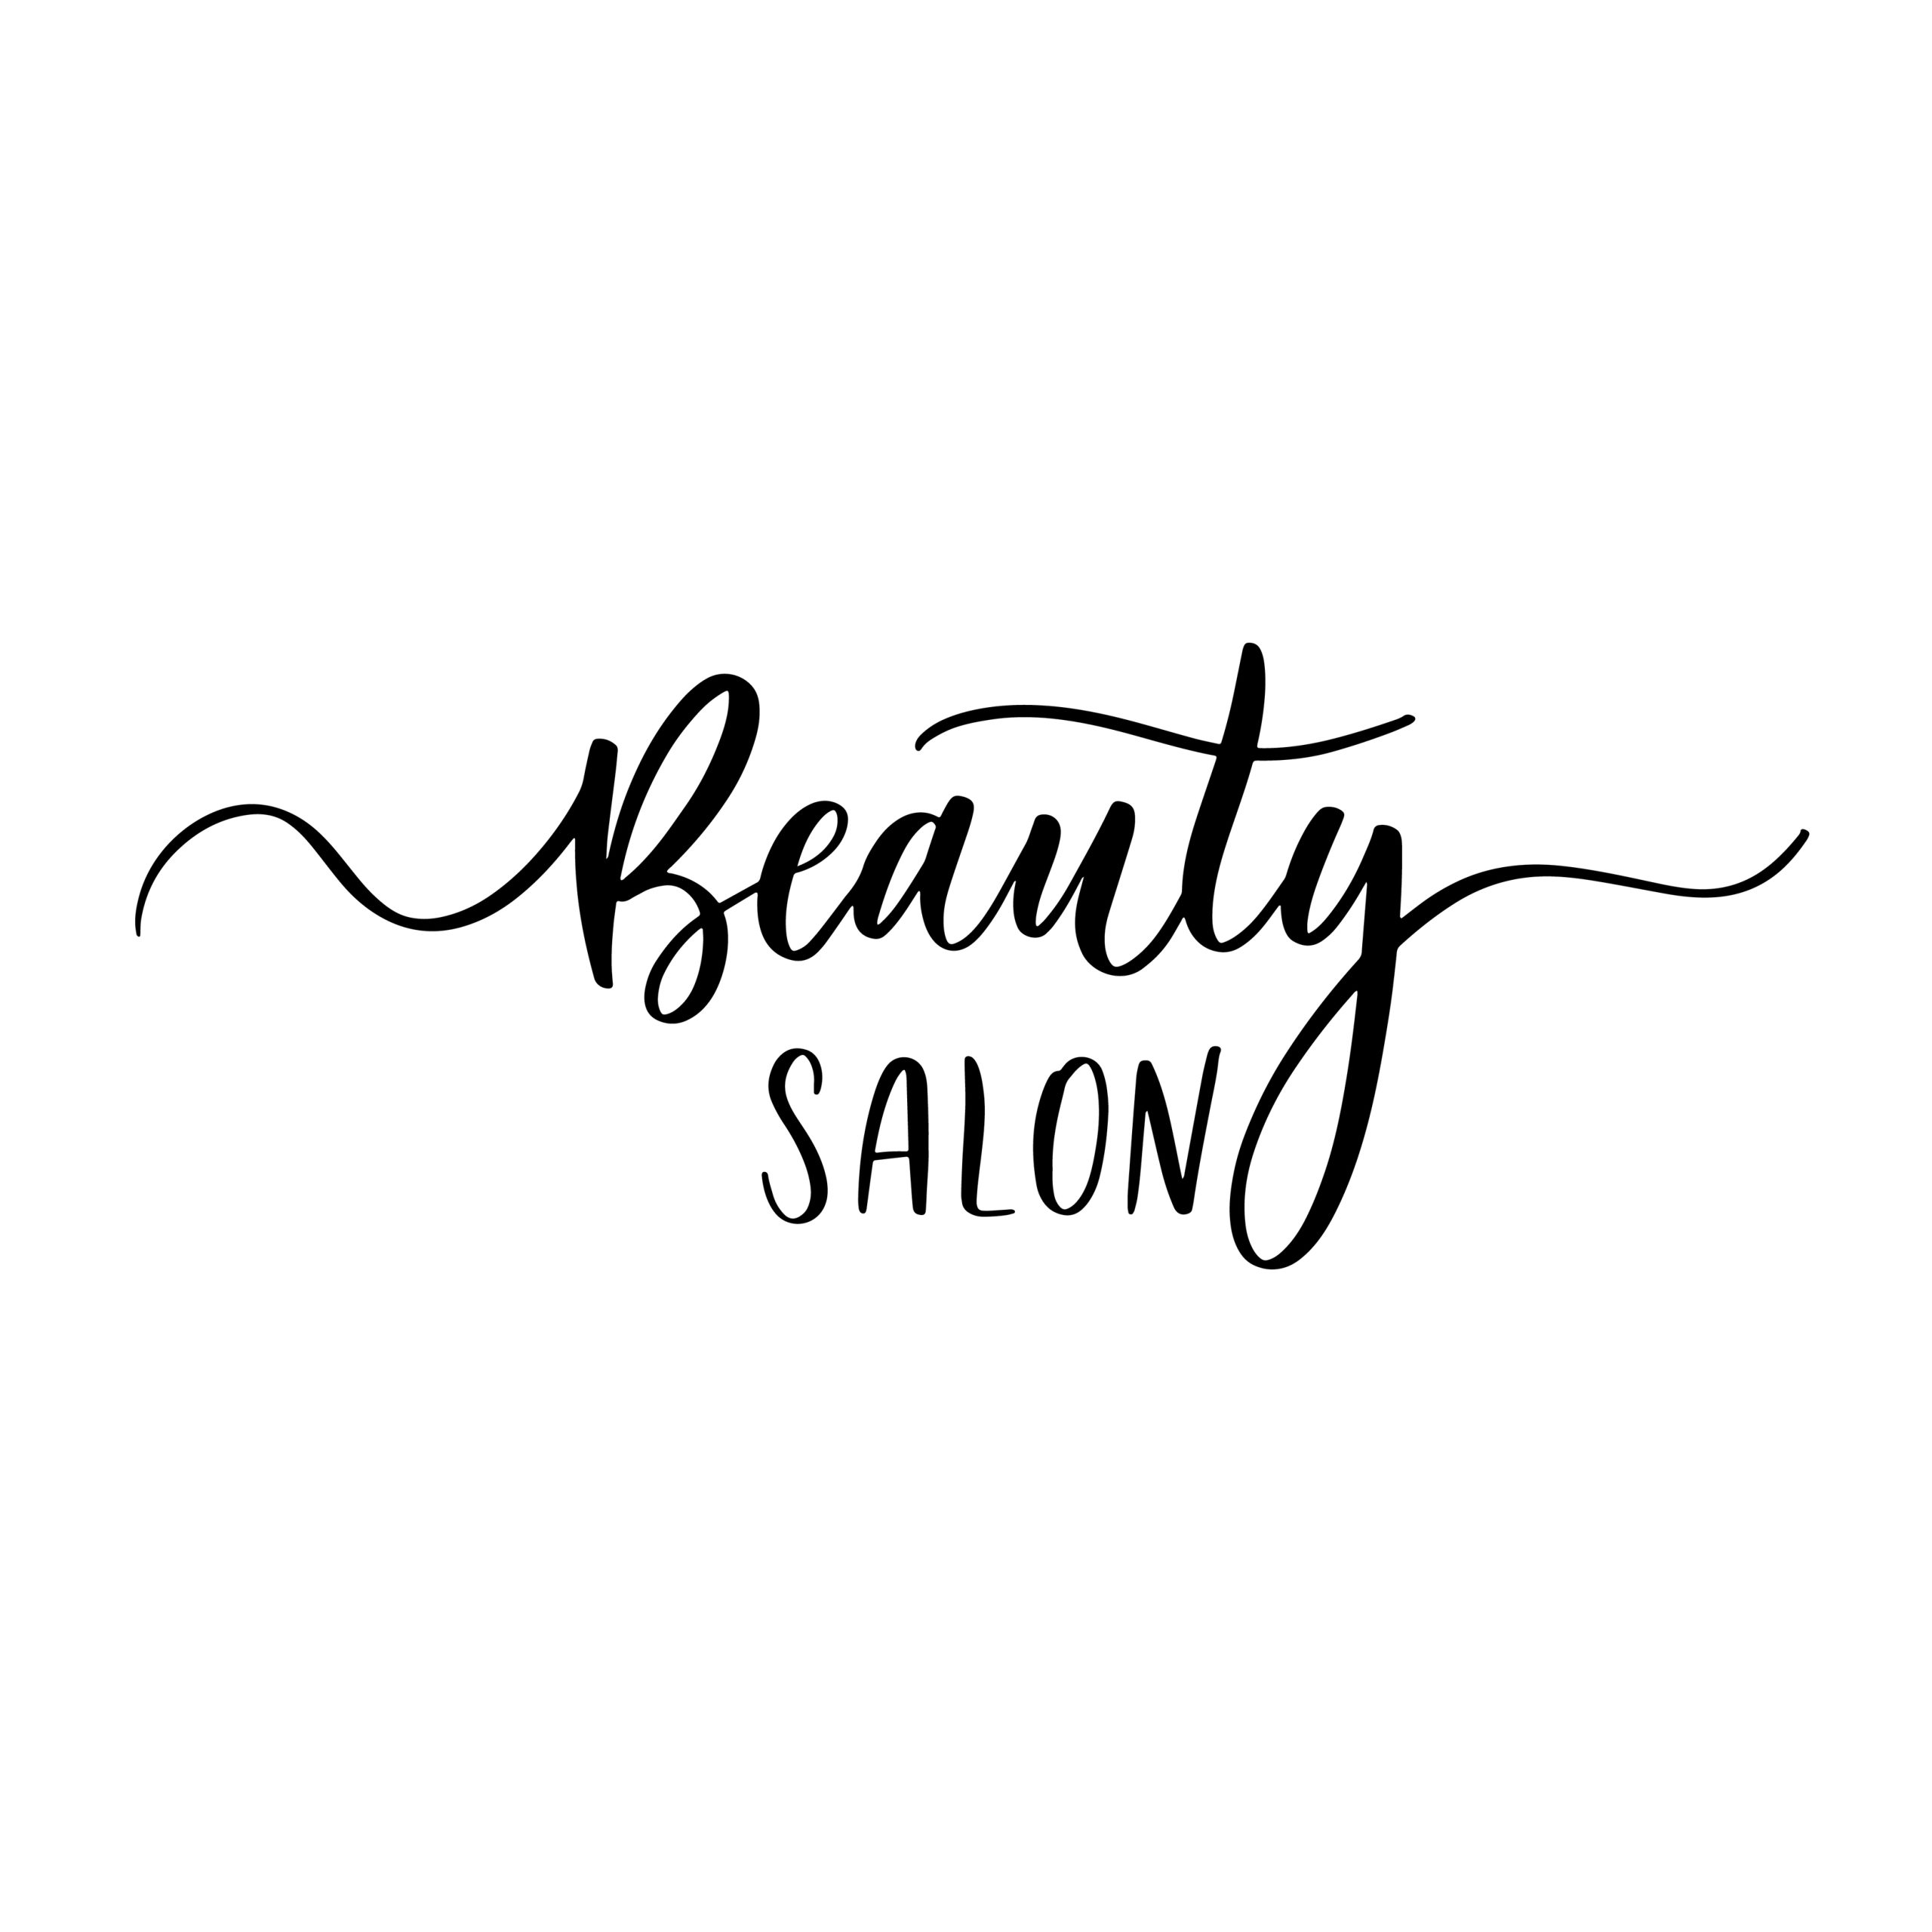 Beauty saloon names